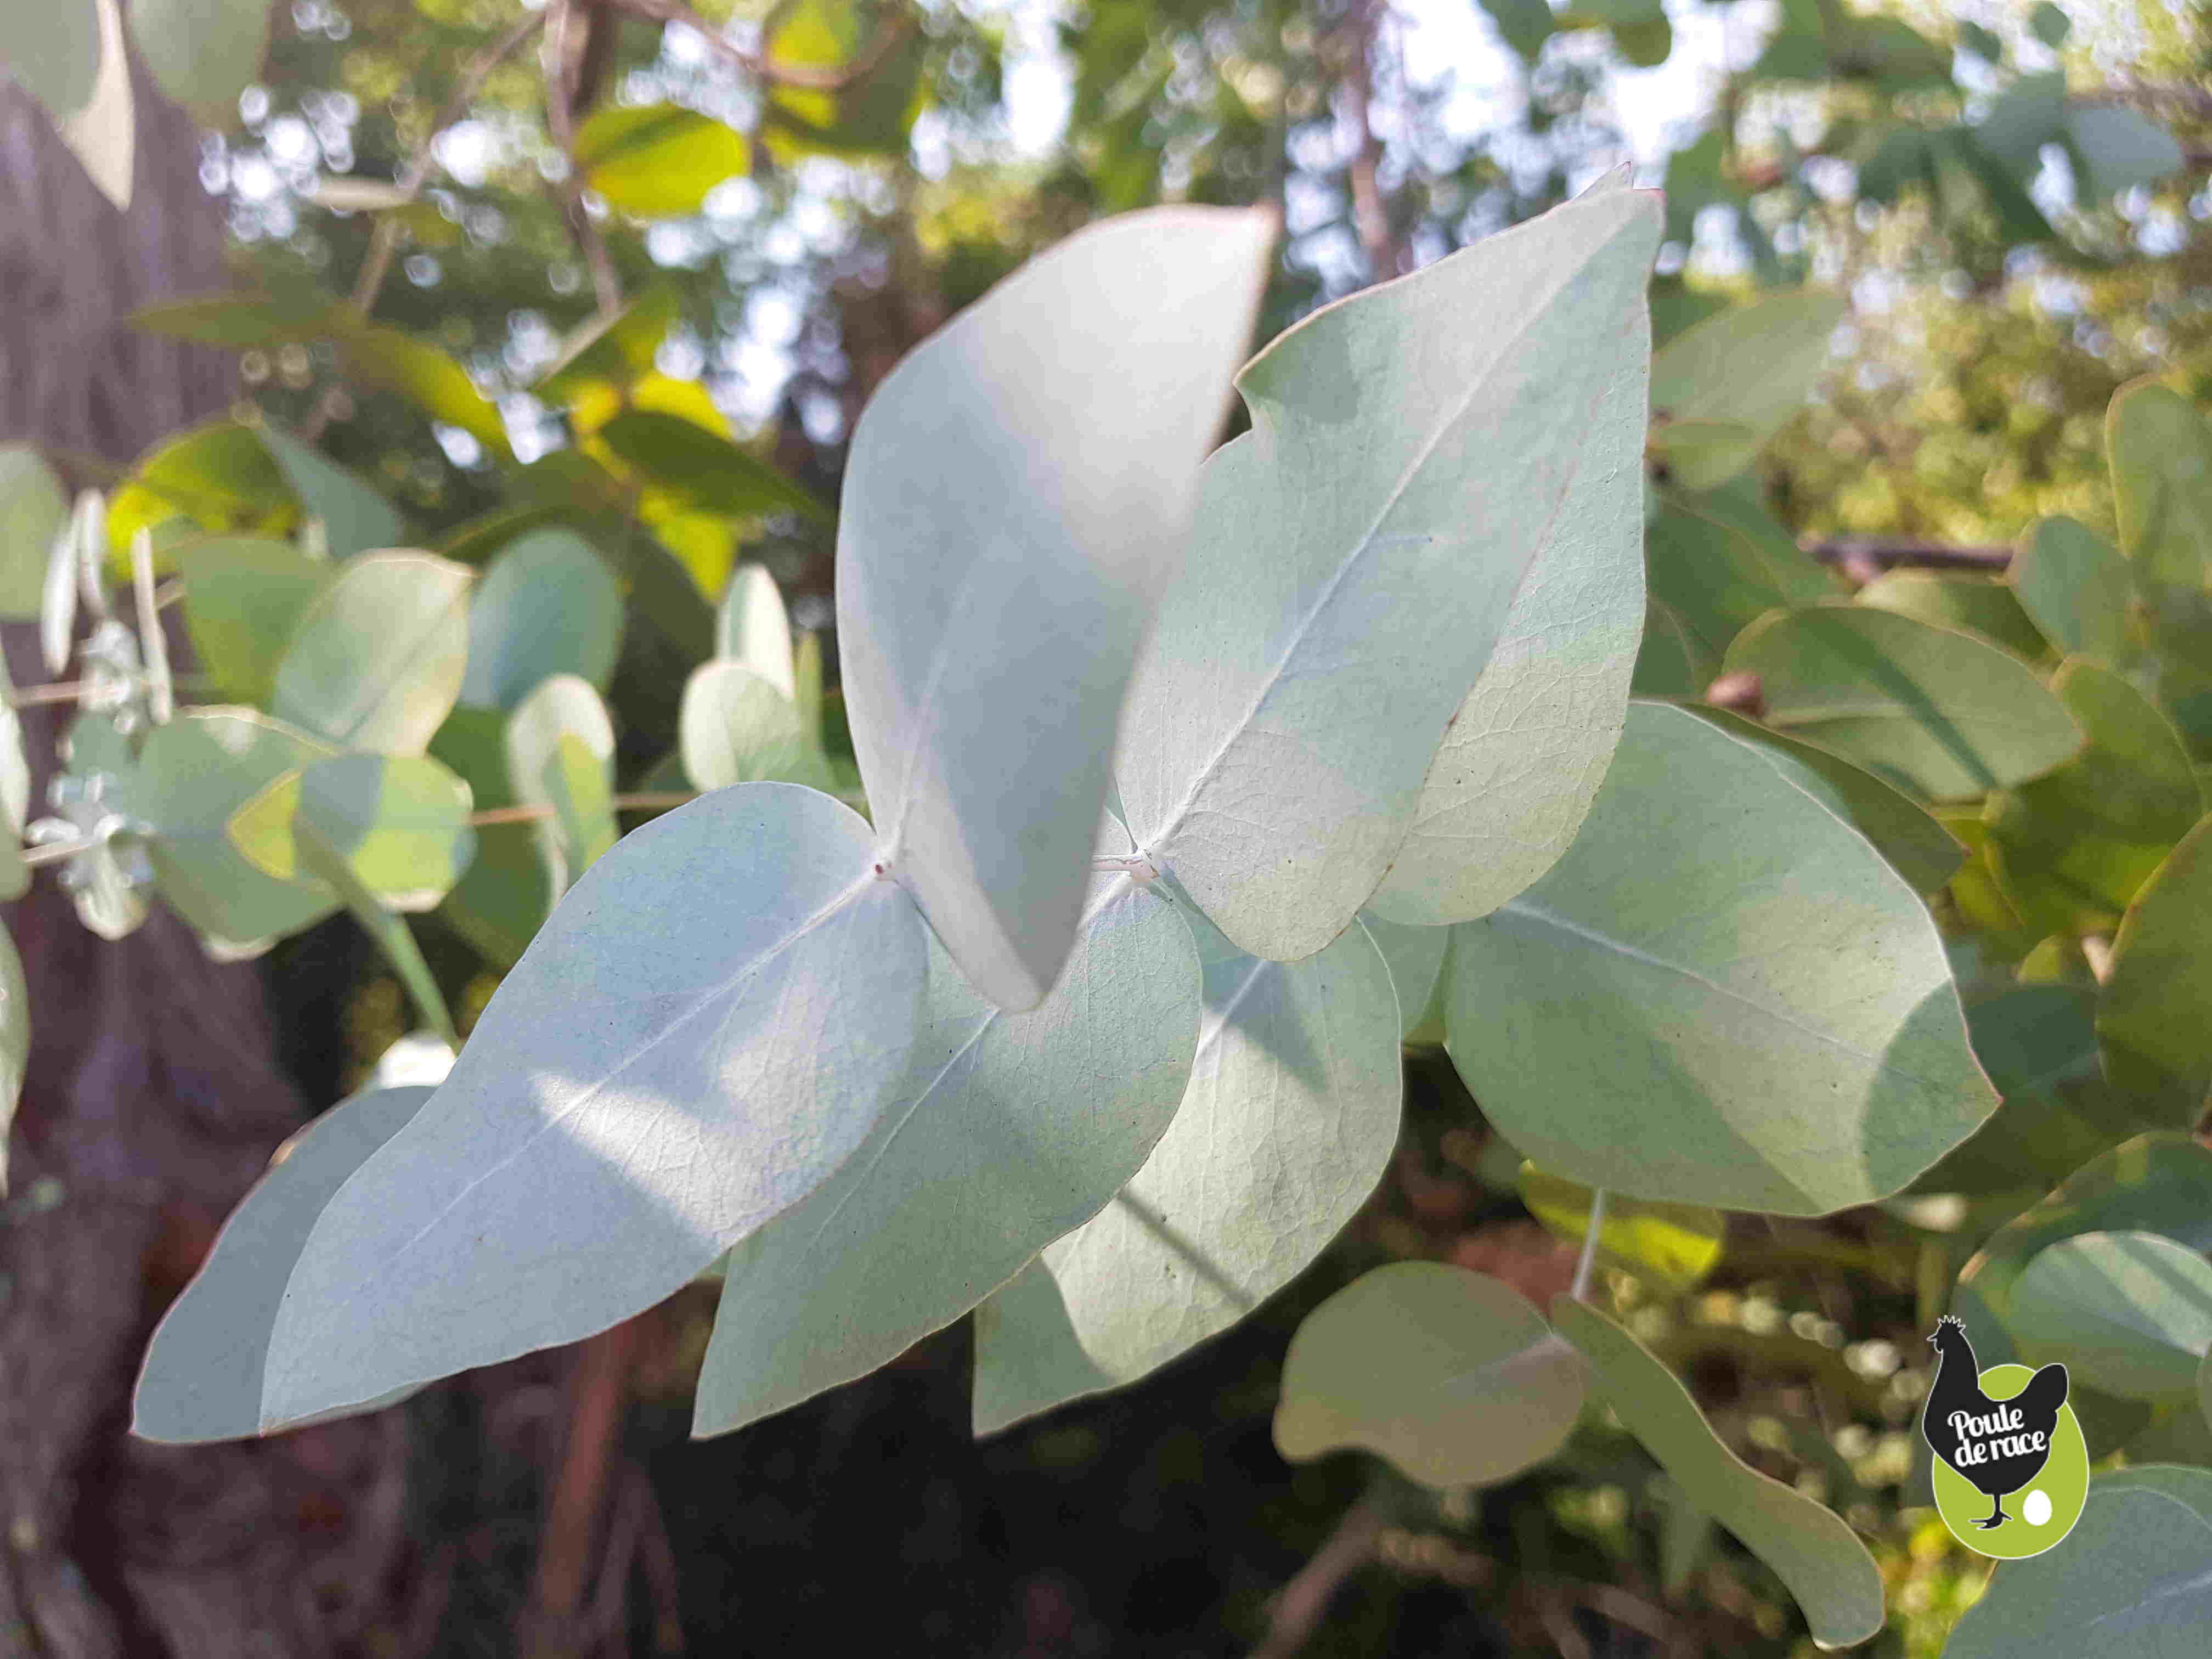 les infusions d'eucalyptus pour les problemes respiratoires